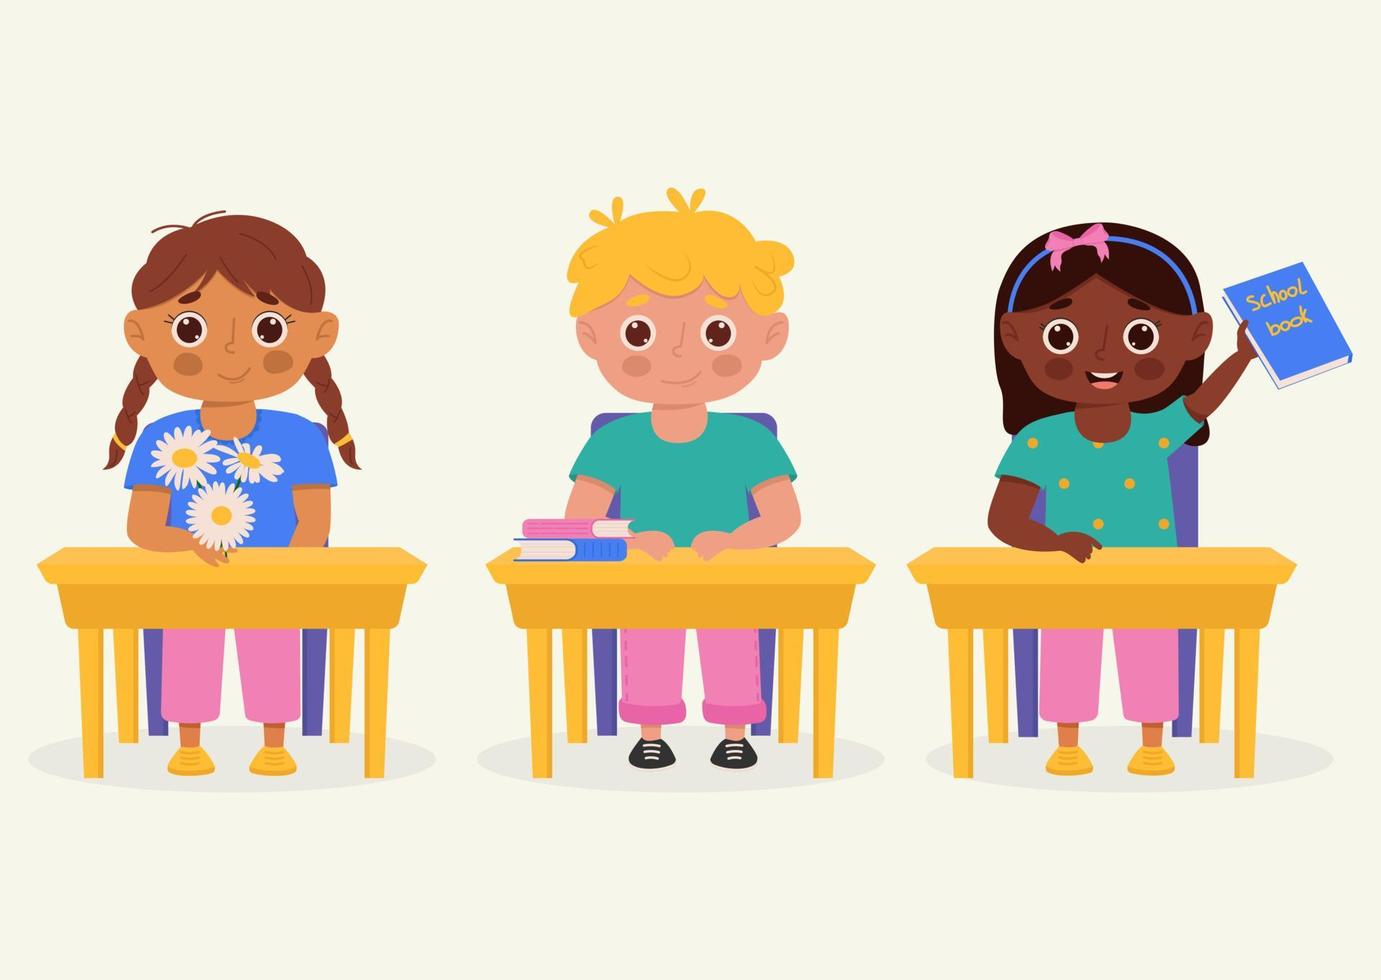 écoliers avec des fournitures scolaires assis à un banc d'école. enfants avec sacs à dos et livres. personnages de dessins animés colorés. illustration vectorielle plane. vecteur